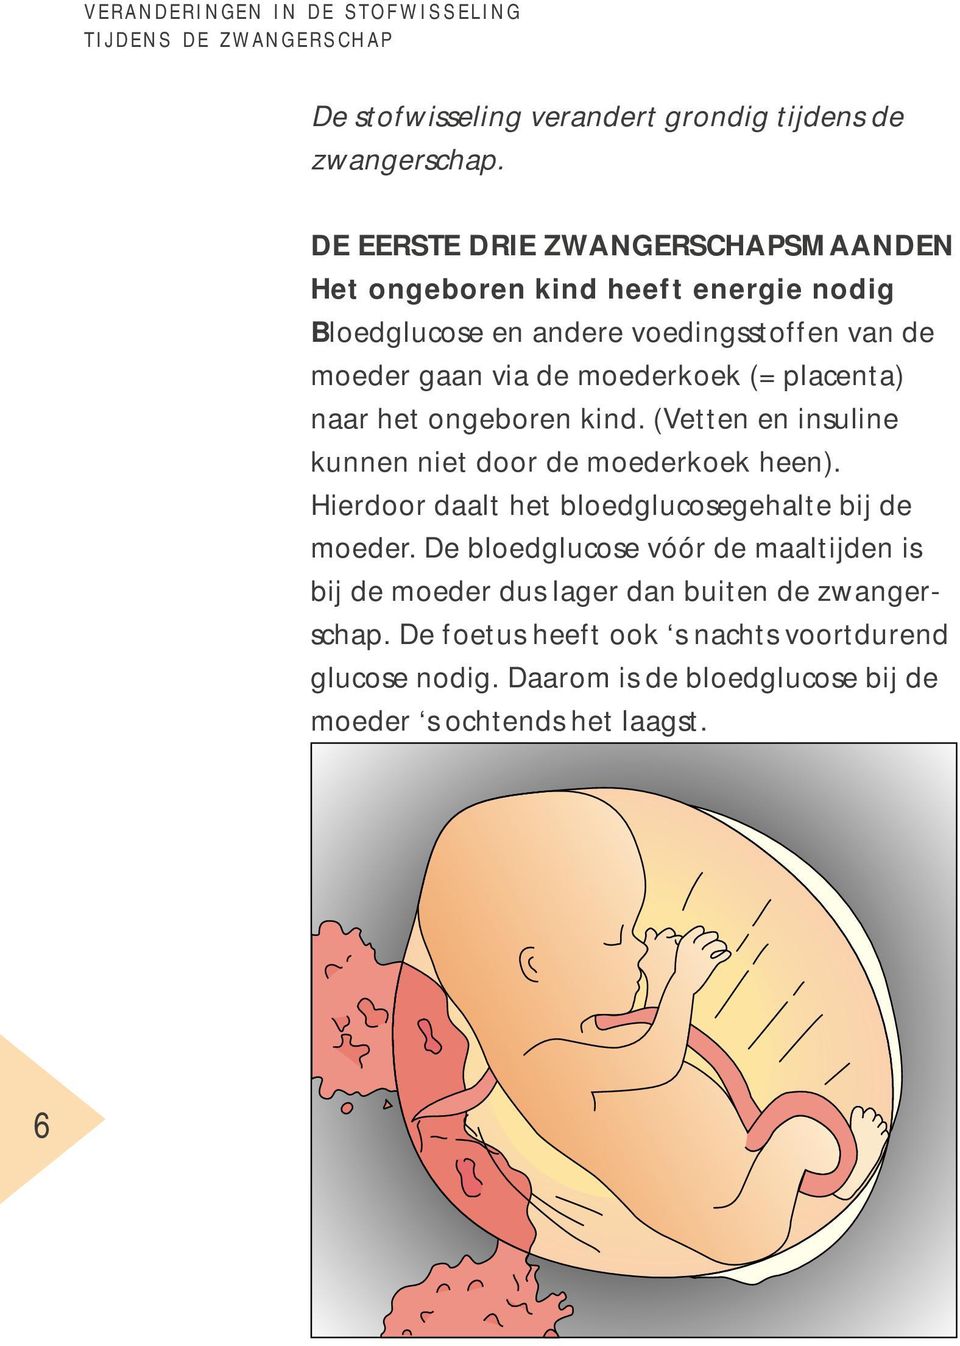 placenta) naar het ongeboren kind. (Vetten en insuline kunnen niet door de moederkoek heen). Hierdoor daalt het bloedglucosegehalte bij de moeder.